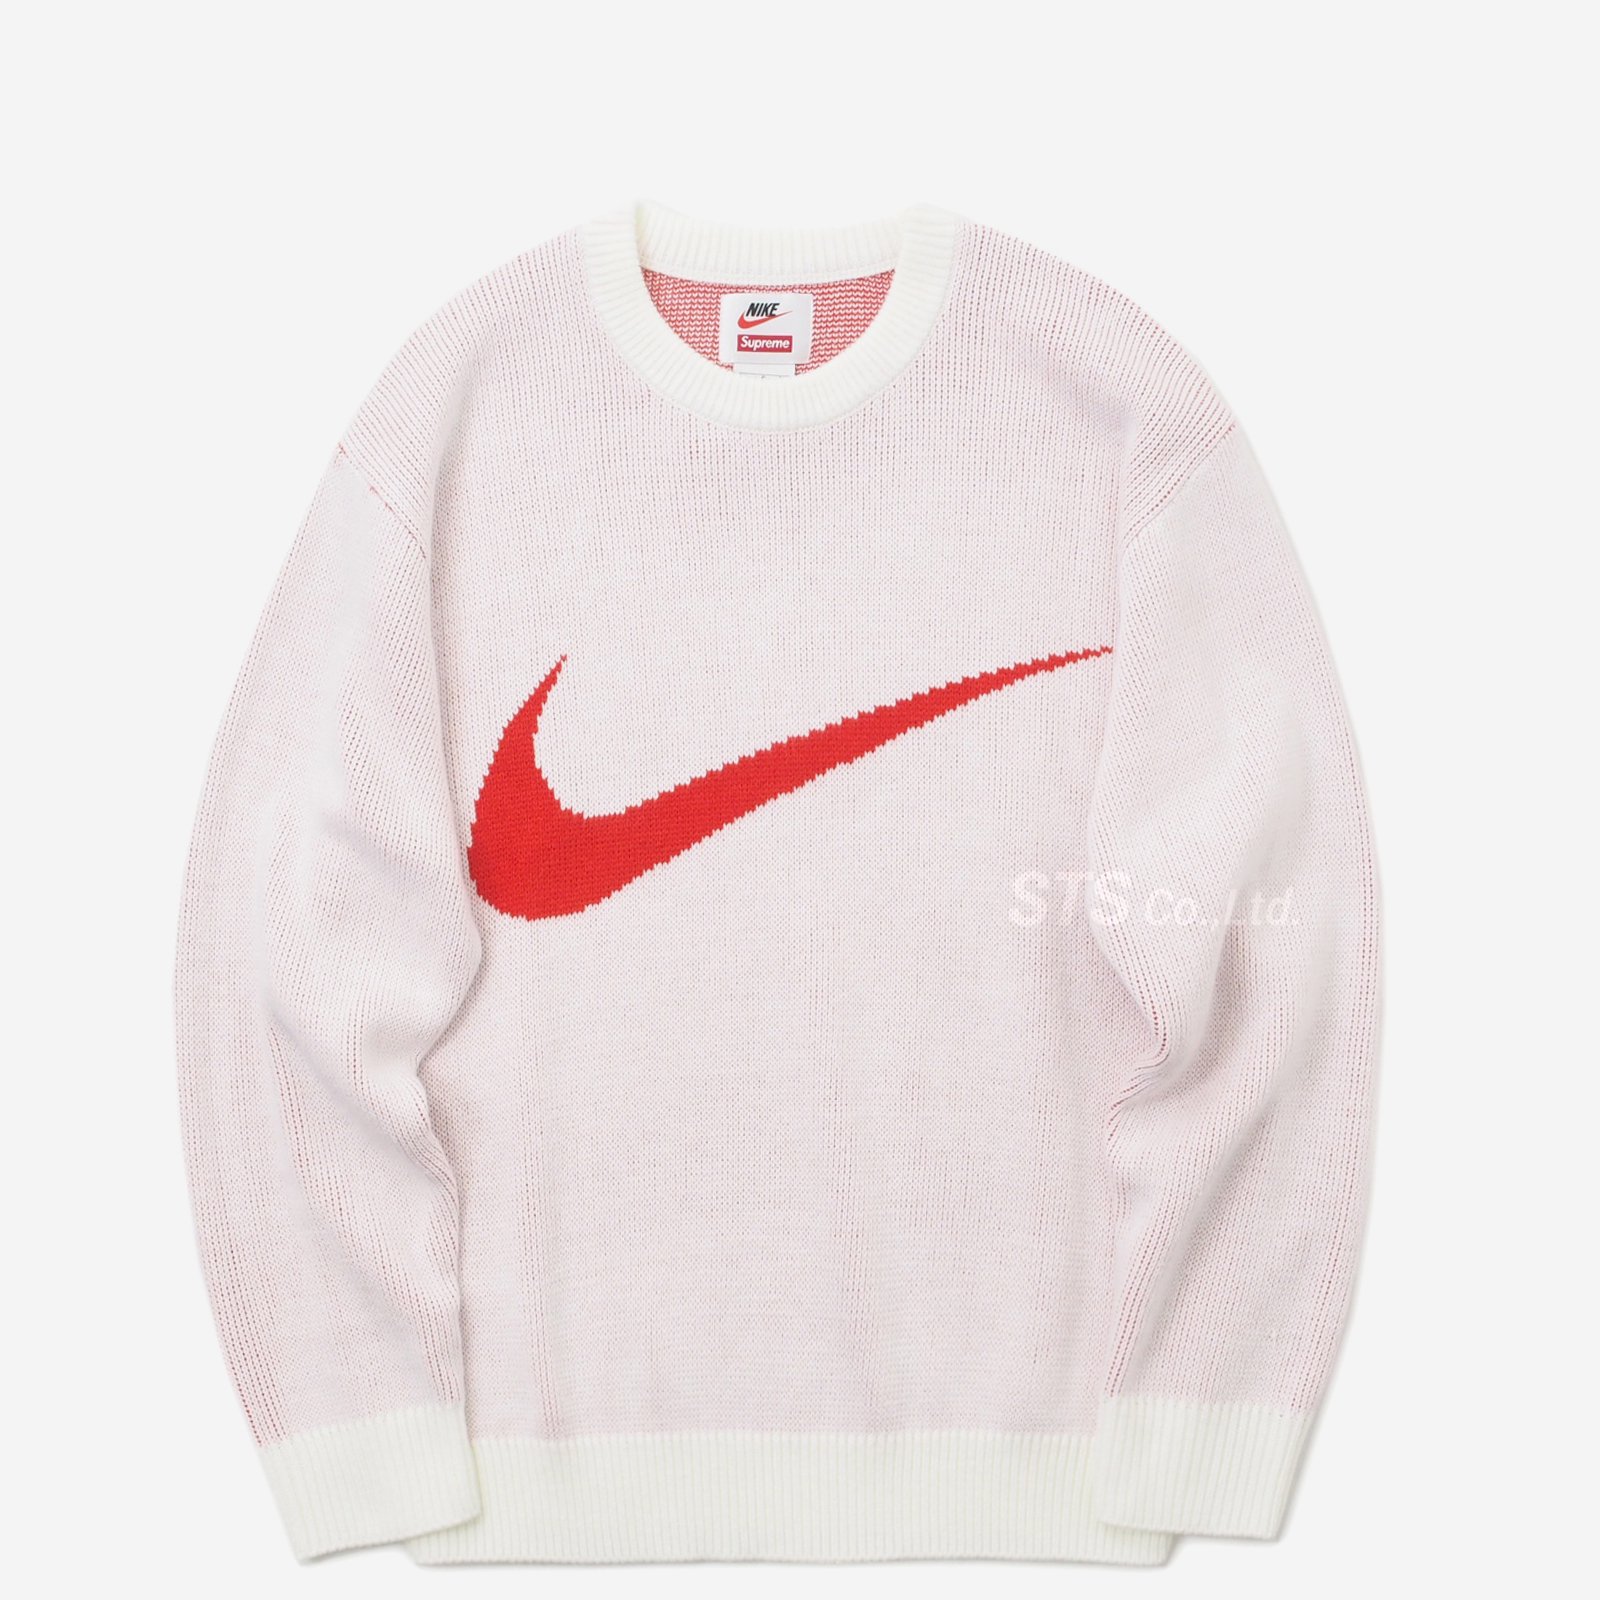 27,540円Supreme/Nike Swoosh Sweater